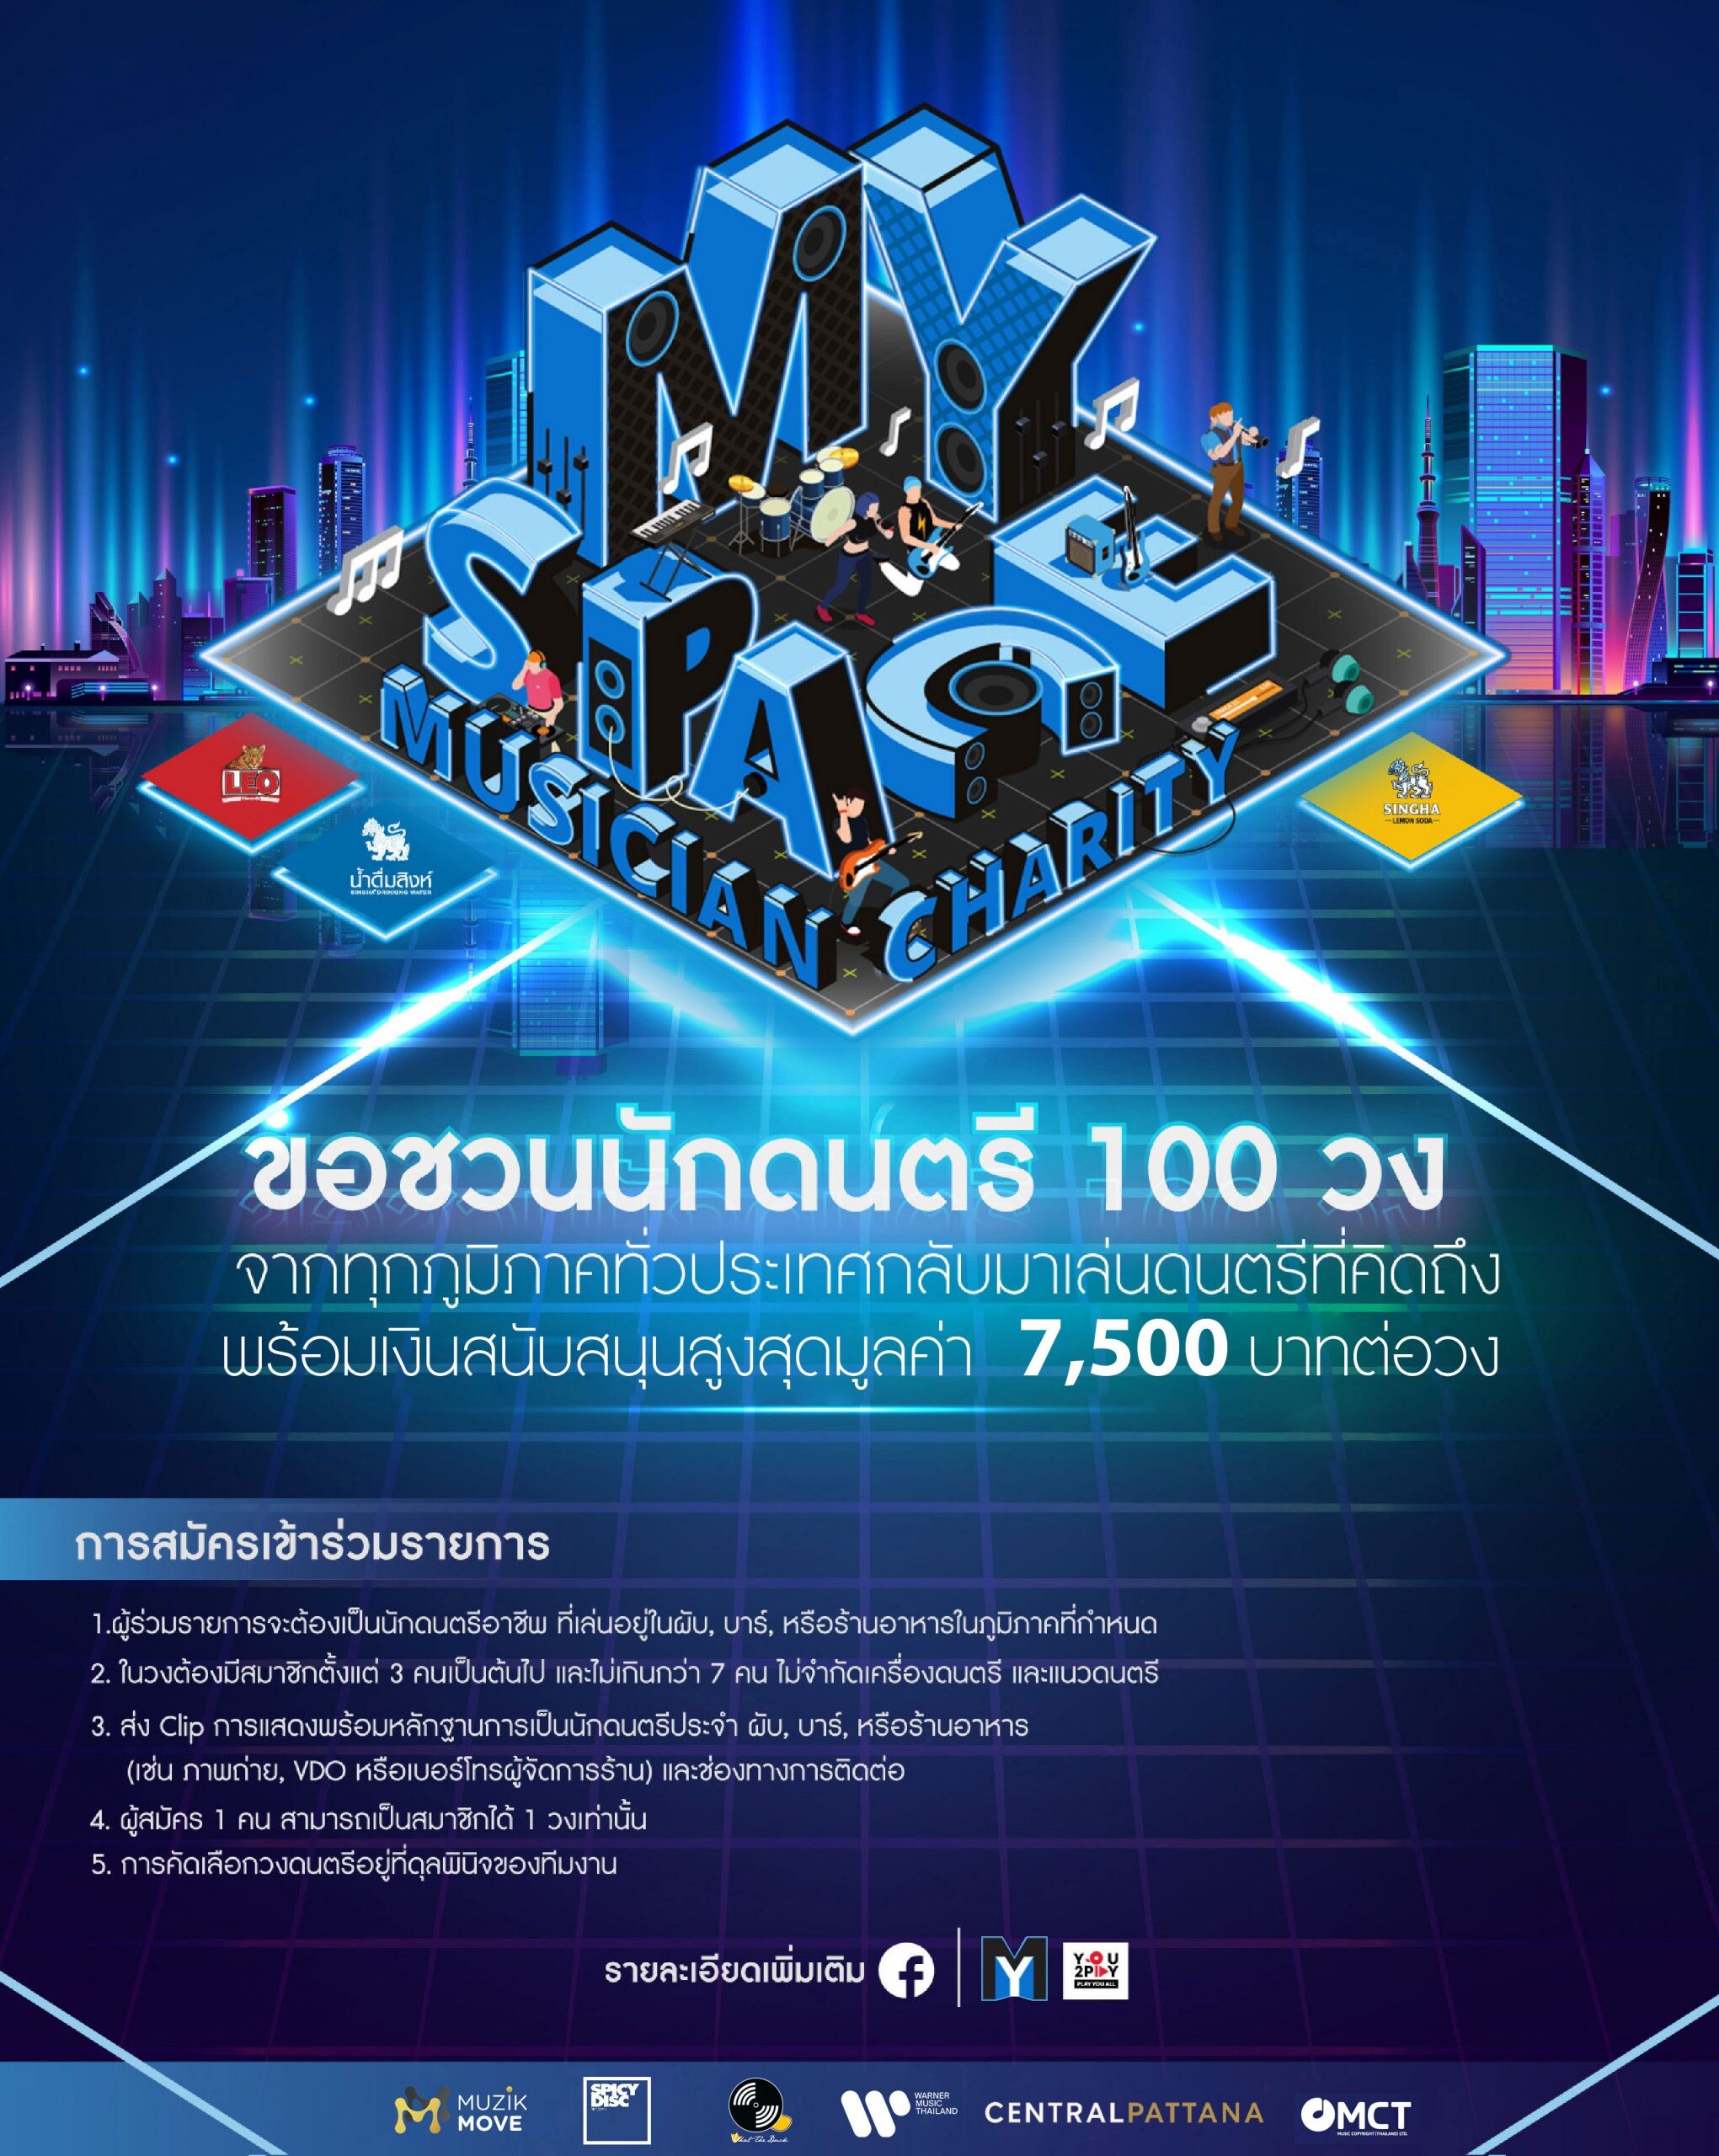 เซ็นทรัลพัฒนา จับมือ MY Space You2Play Music Copyright (Thailand) และค่ายเพลงชั้นนำของไทย ร่วมส่งต่อพลังบวกช่วยเหลือกลุ่มนักดนตรีที่ได้รับผลกระทบจากโควิด-19 ในแคมเปญ "MY Space Musician Charity"